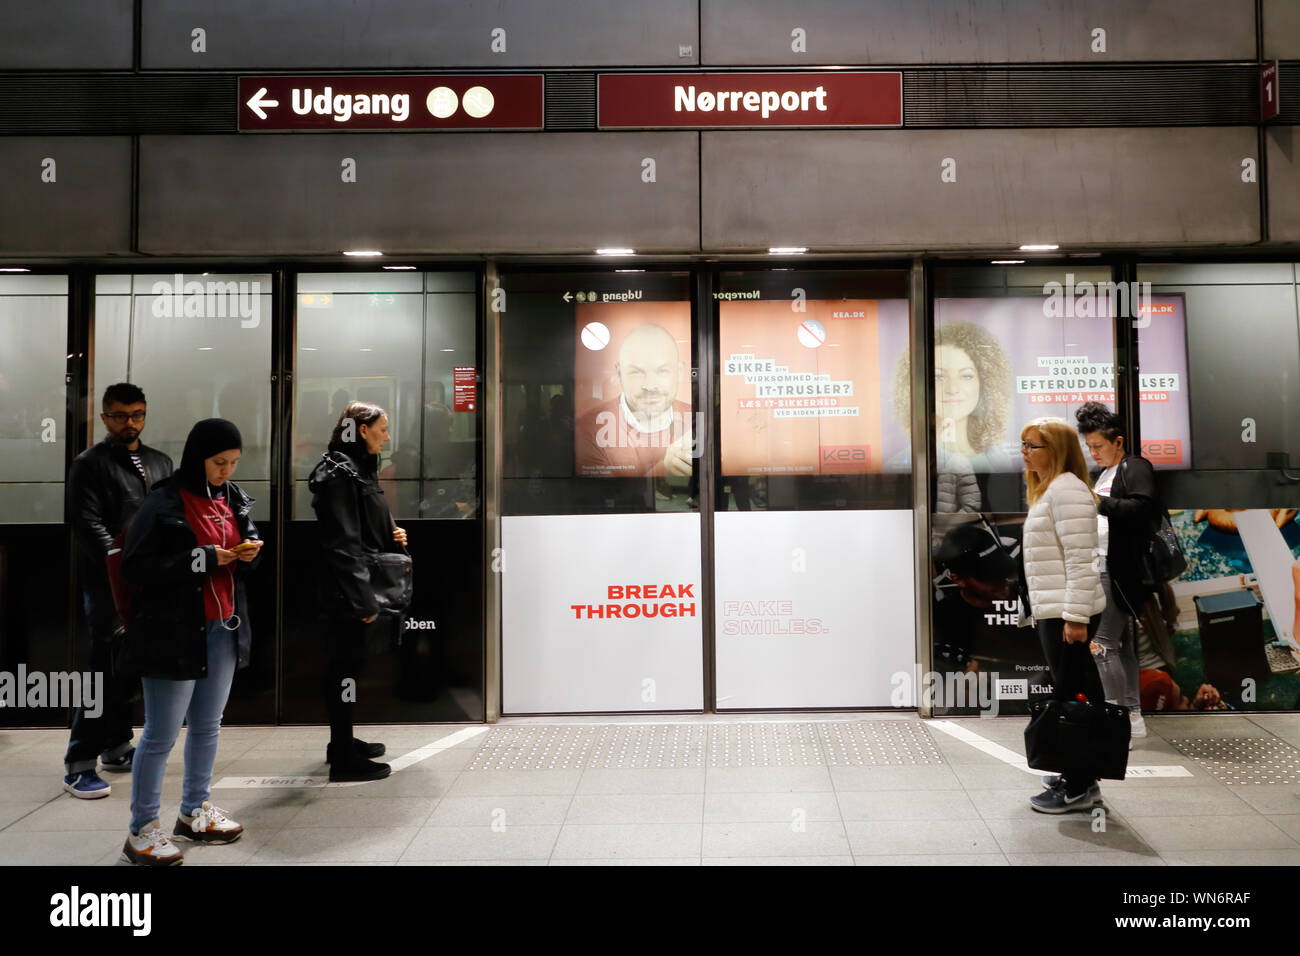 Kopenhagen, Dänemark - 4 September, 2019: die Menschen am Bahnhof Norreport Plattform Gates warten auf die rapid transit U-Bahn. Stockfoto